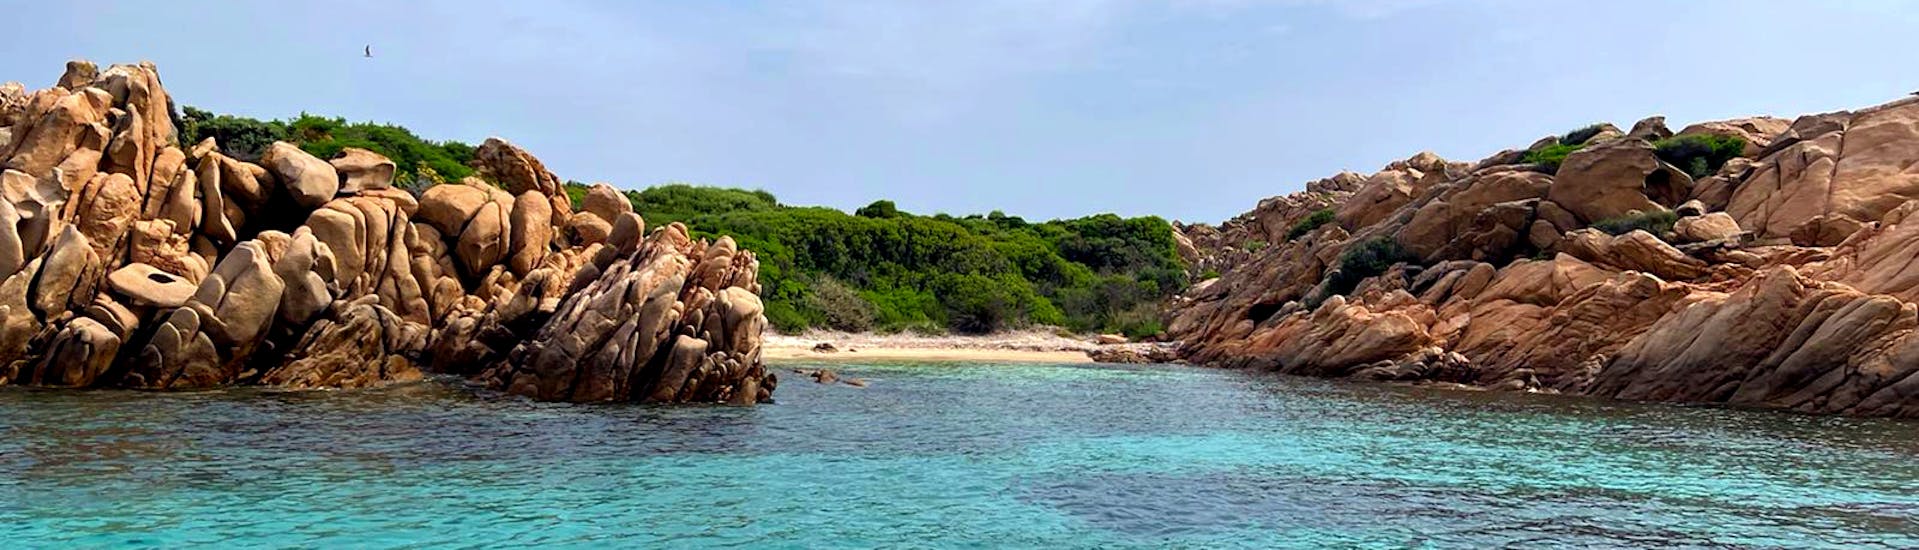 Una spiaggia che vederete durante la Gita in gommone all'Isola di Mortorio e Romazzino con Blue Deep Tours Golfo Aranci.